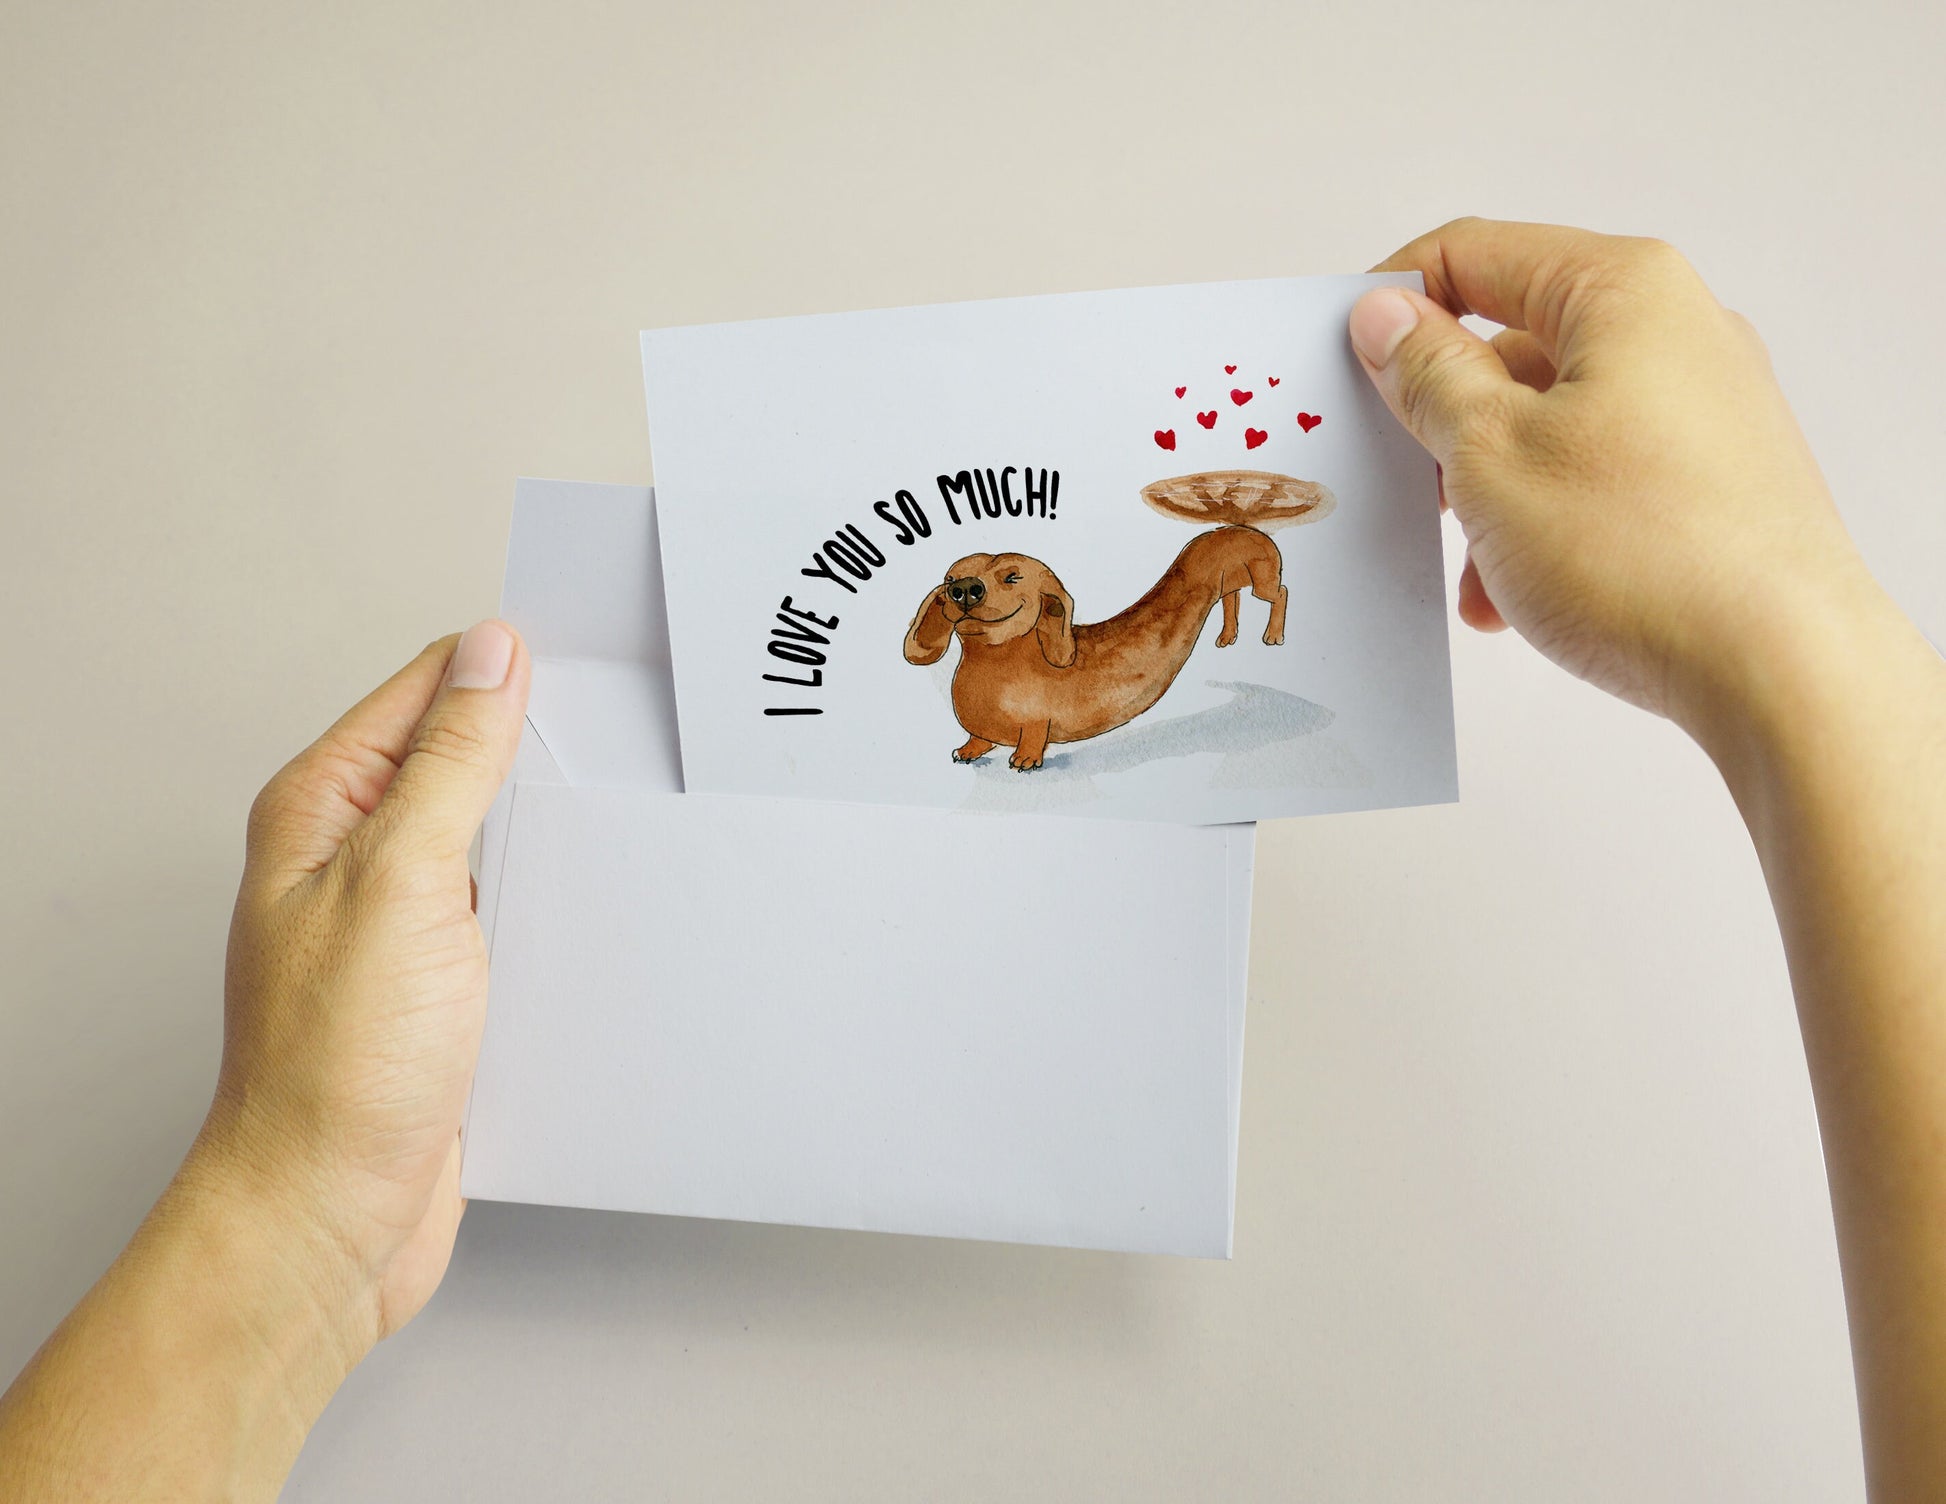 Dachshund Valentines Card From Dog - I Love You So Much - Wiener Dog Valentine Gift For Boyfriend